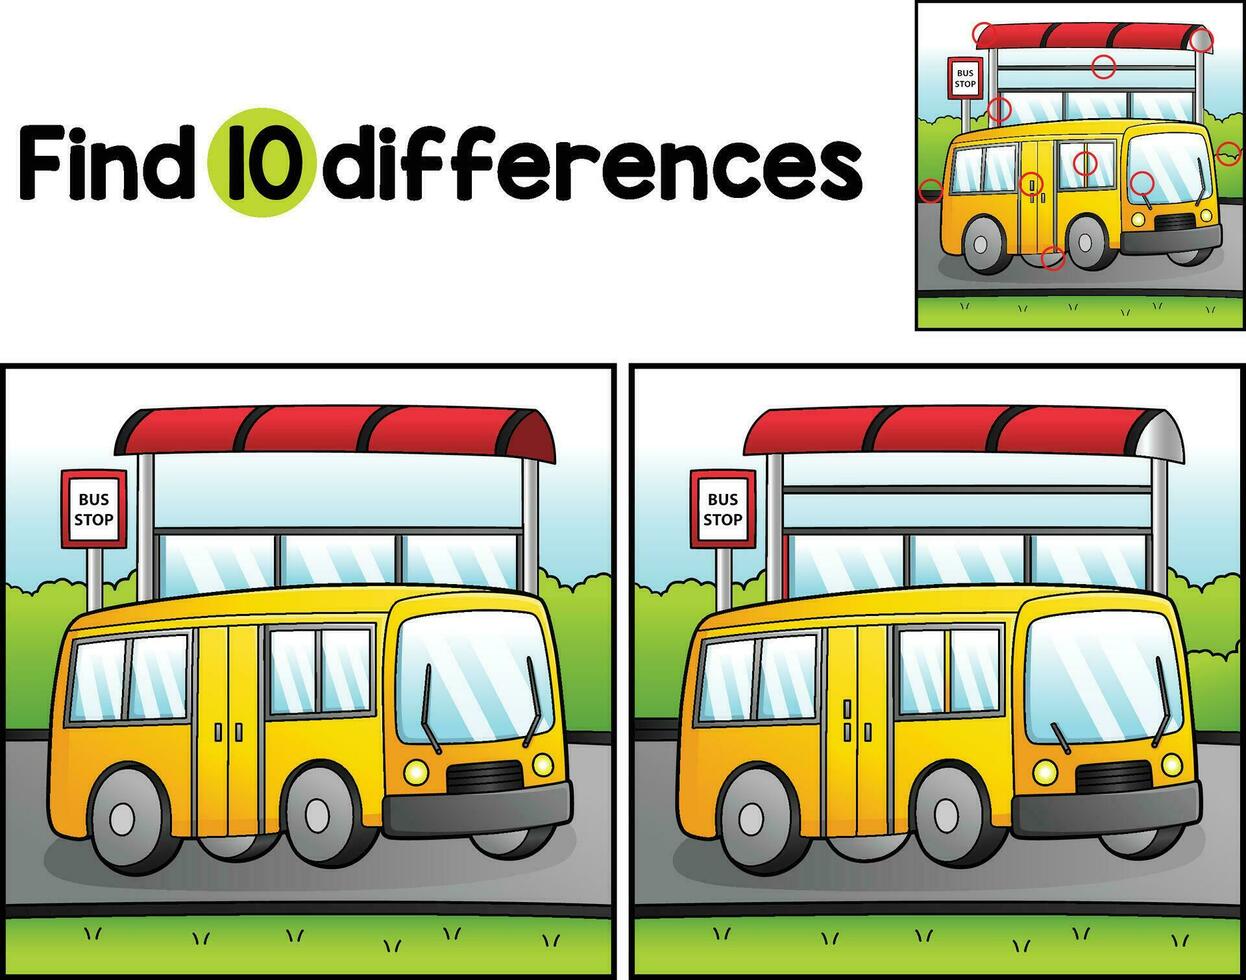 ônibus veículo encontrar a diferenças vetor